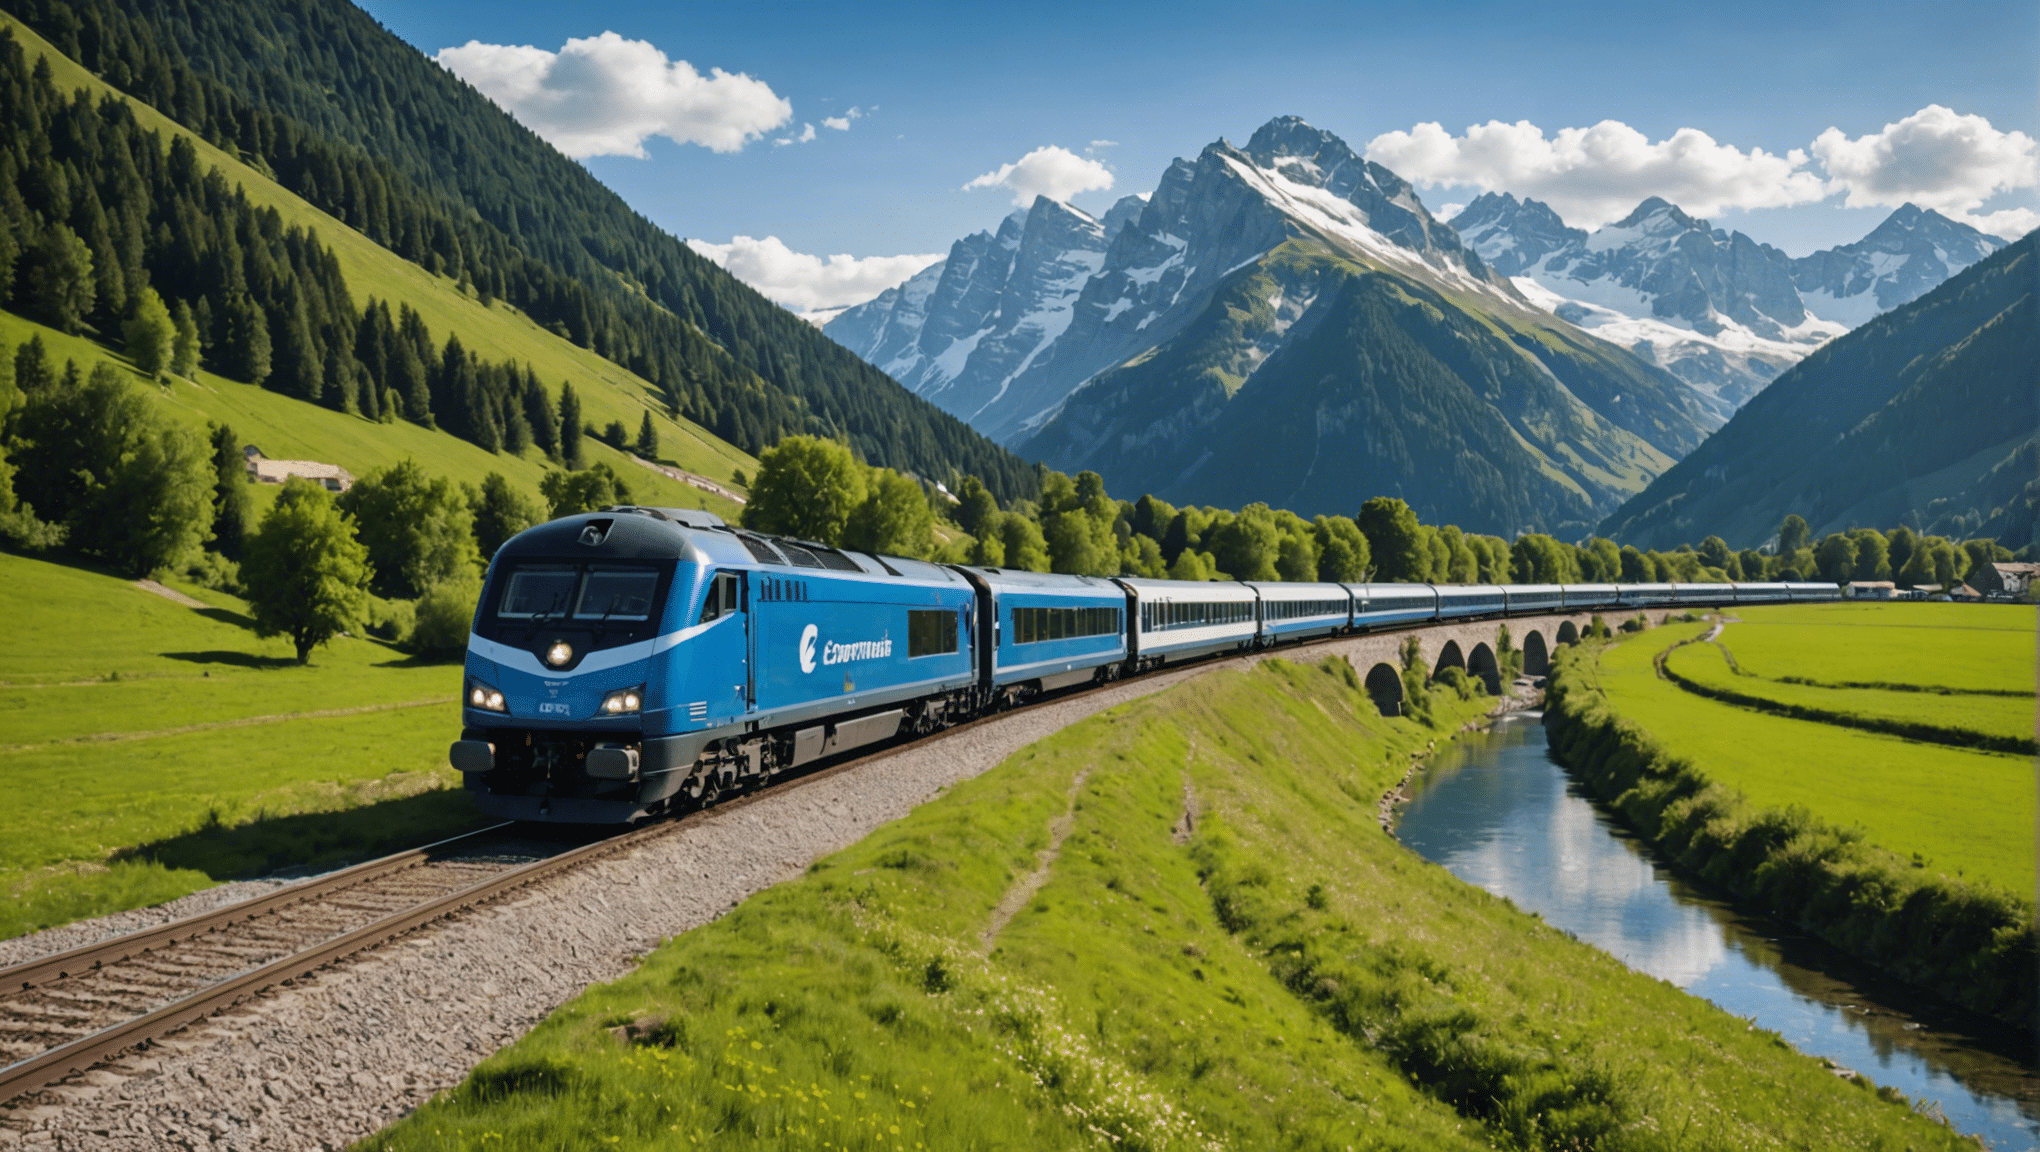 descubra as rotas europeias mais espetaculares através de paisagens deslumbrantes enquanto viaja de trem.